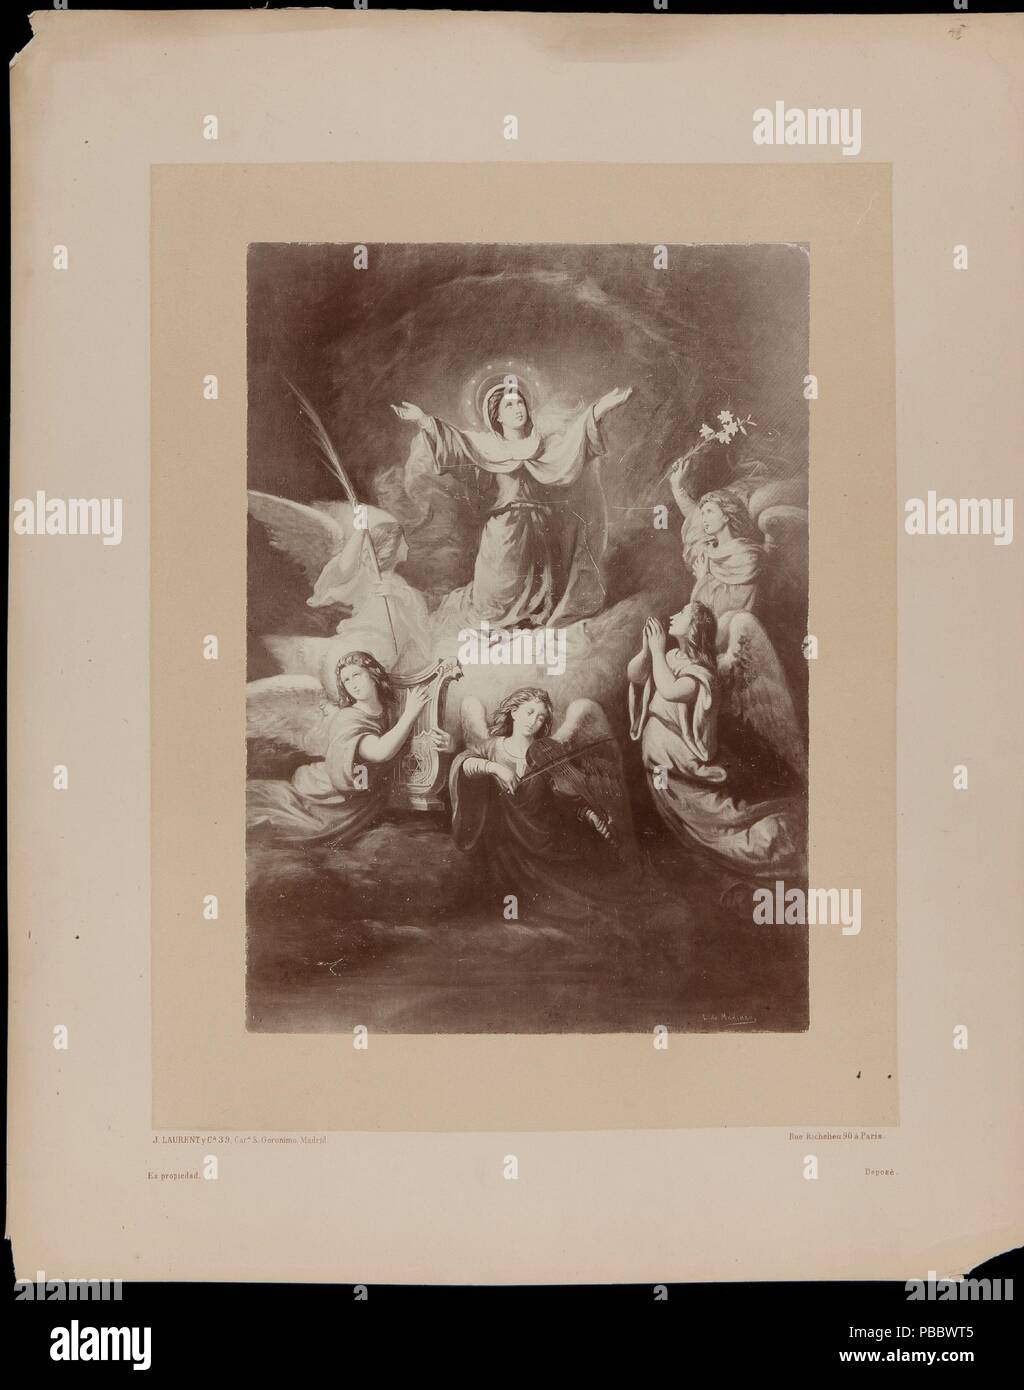 Juan Laurent y Minier/ "Die Himmelfahrt der Jungfrau". Nach 1875. Eiklar auf Fotopapier. Museum: Museo del Prado, Madrid, España. Stockfoto